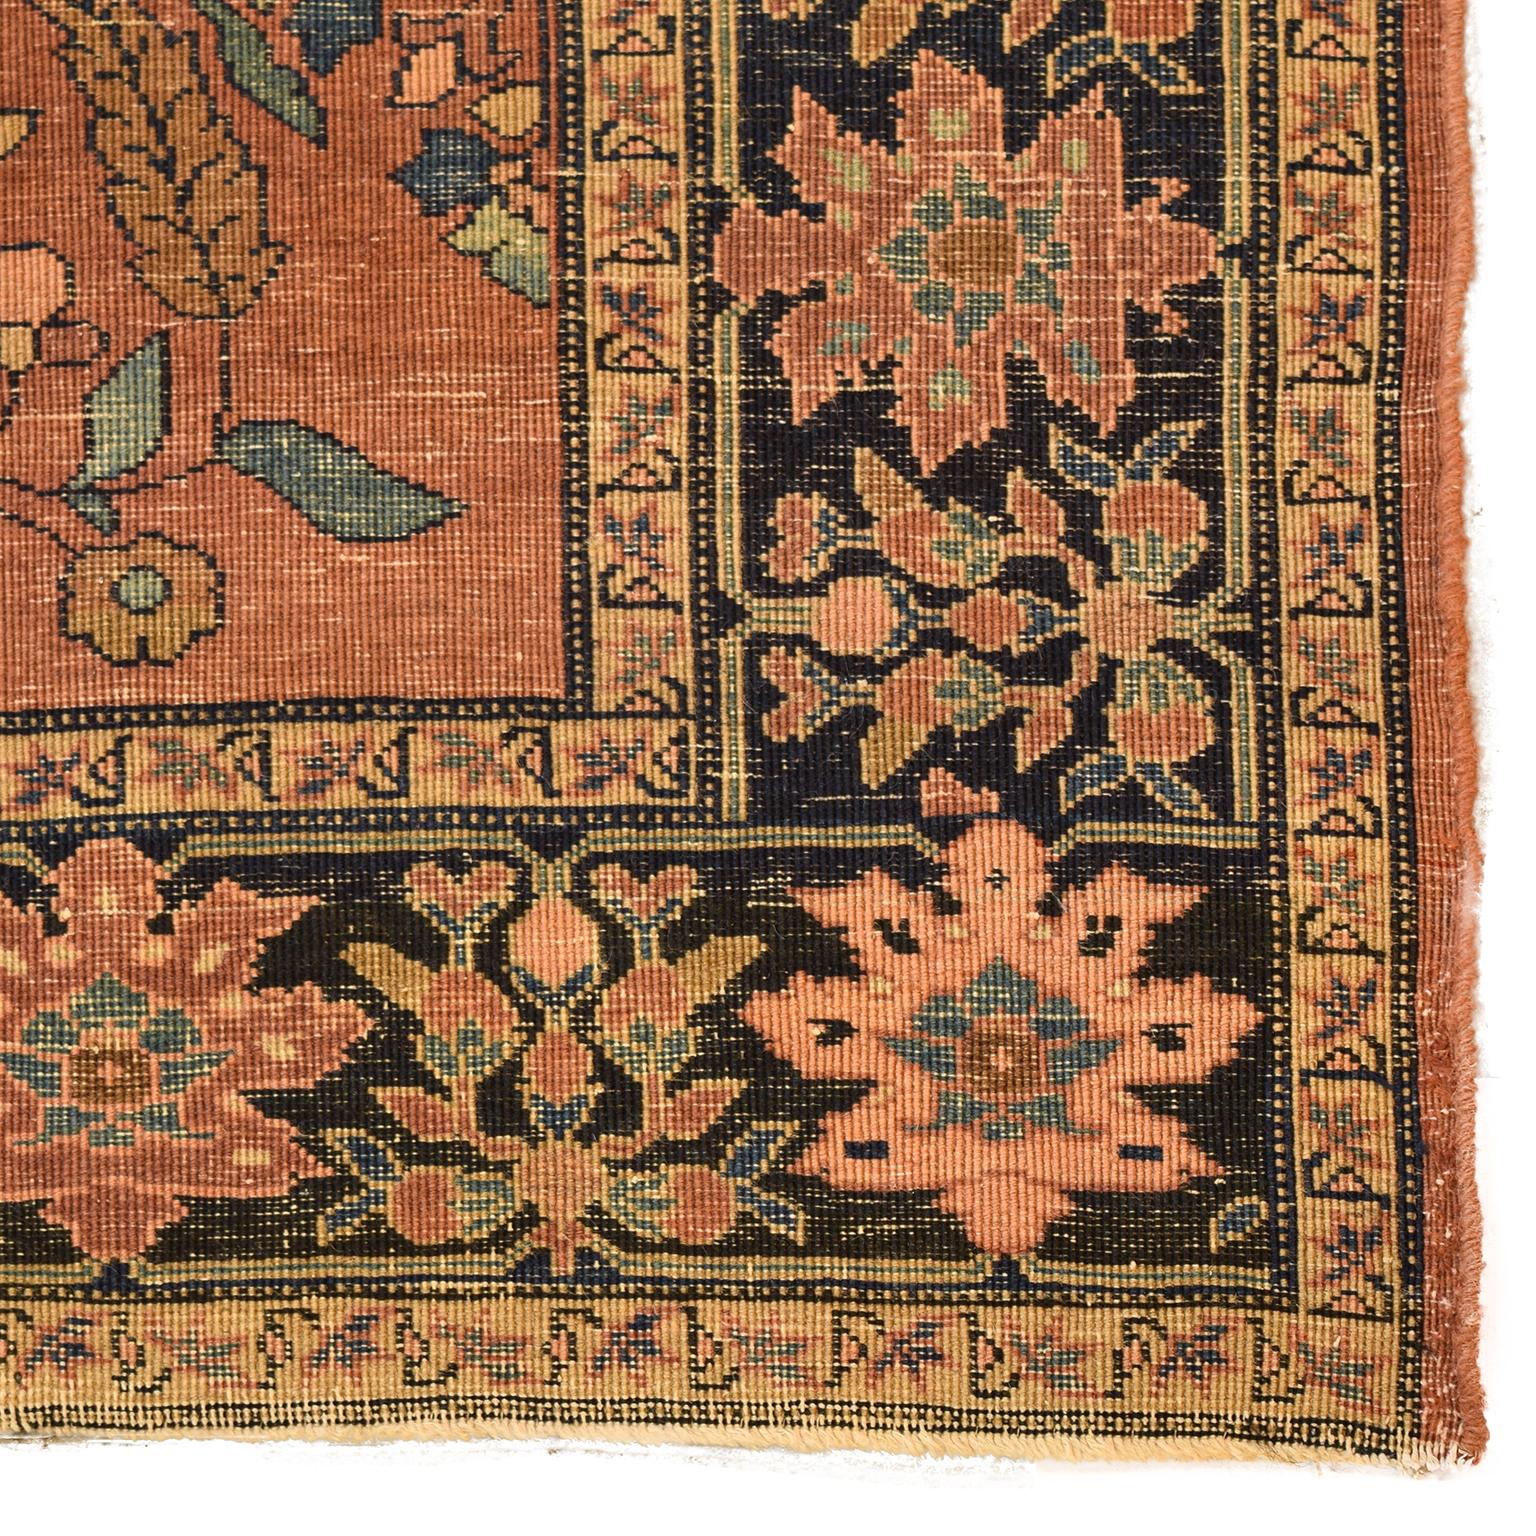 Wool Antique 1880s Persian Farahan Rug with Sarouk Design, 3' x 5'